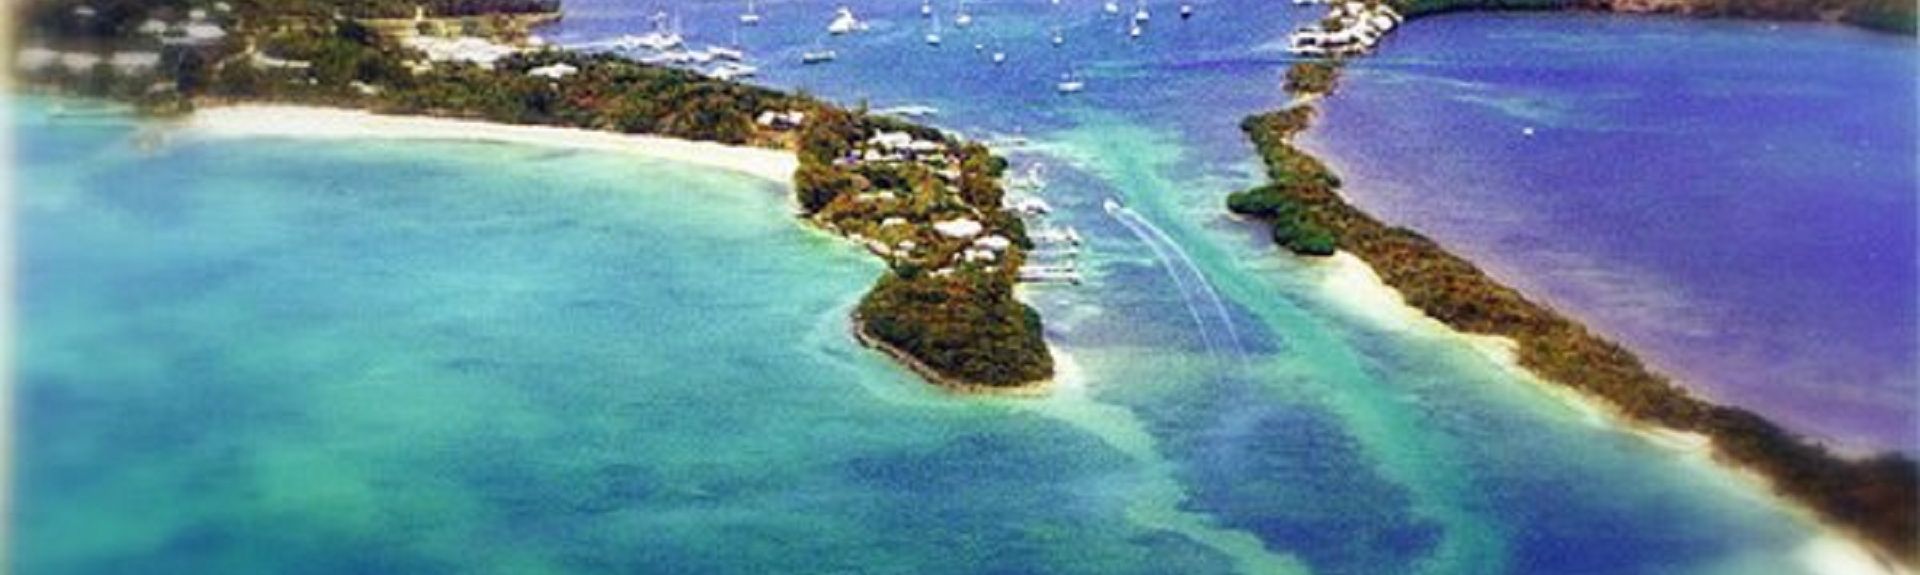 Vrbo | Coco Bay Vacation Rentals: house rentals & more